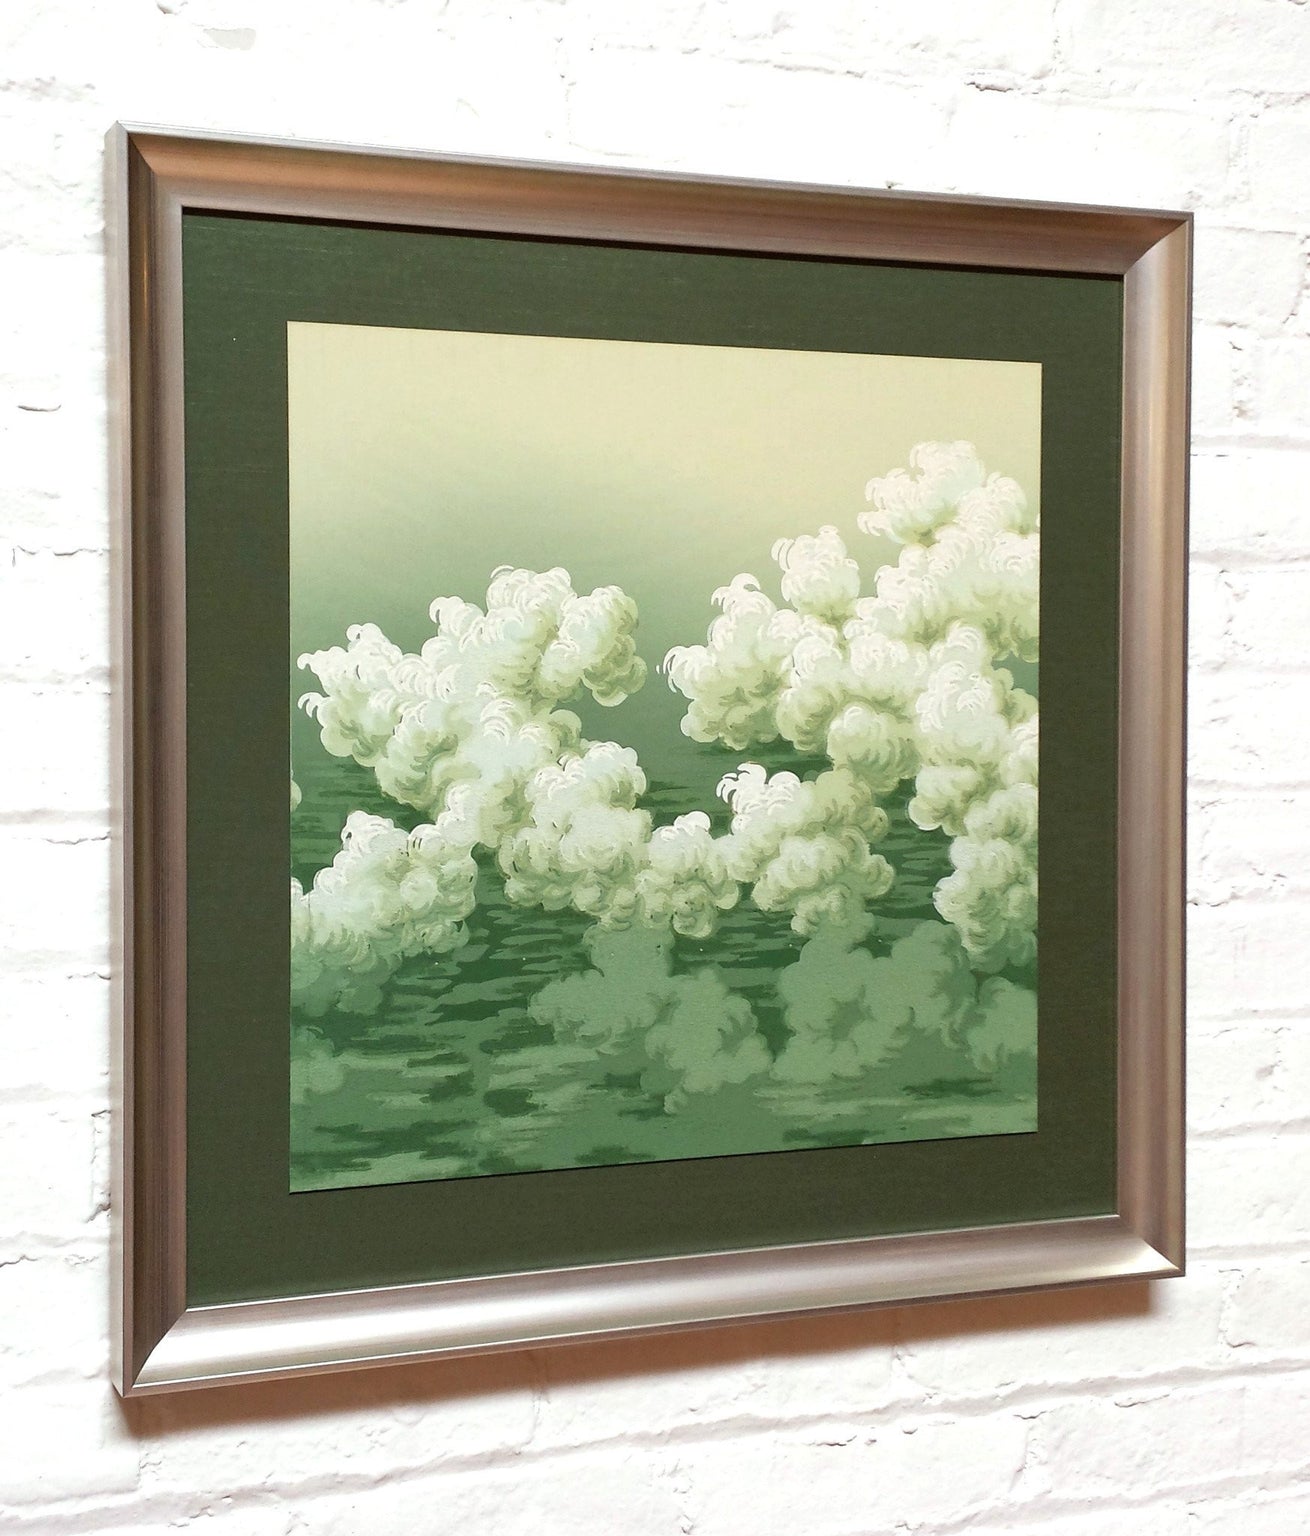 Blended Green Cloud Frieze - Framed Antique Wallpaper Art